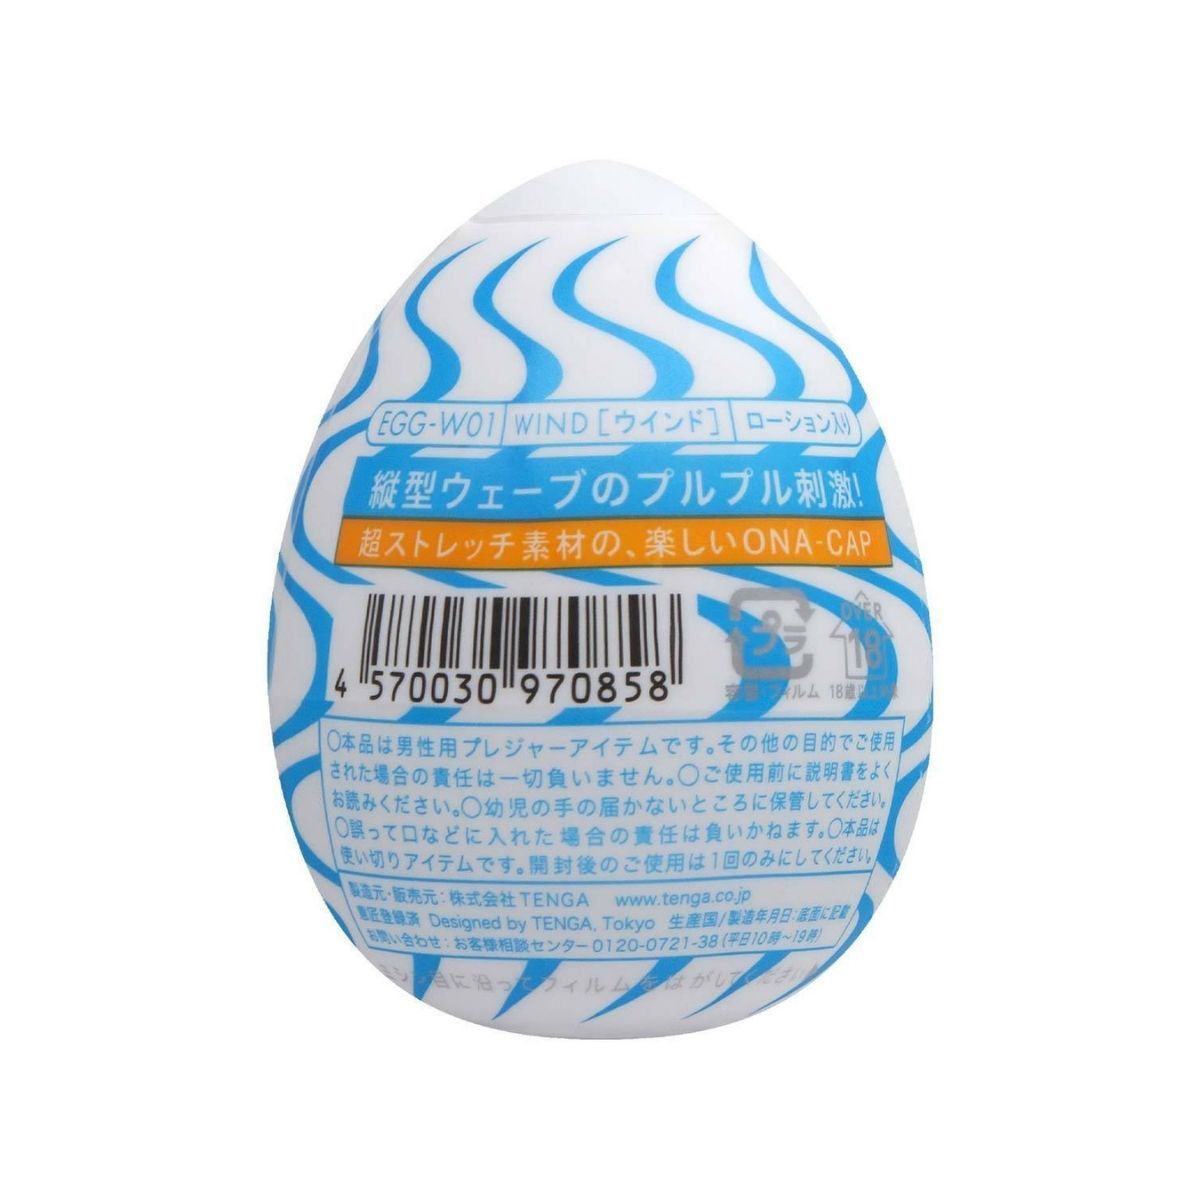 TENGA Egg Wind 垂直波紋飛機蛋 飛機蛋 購買